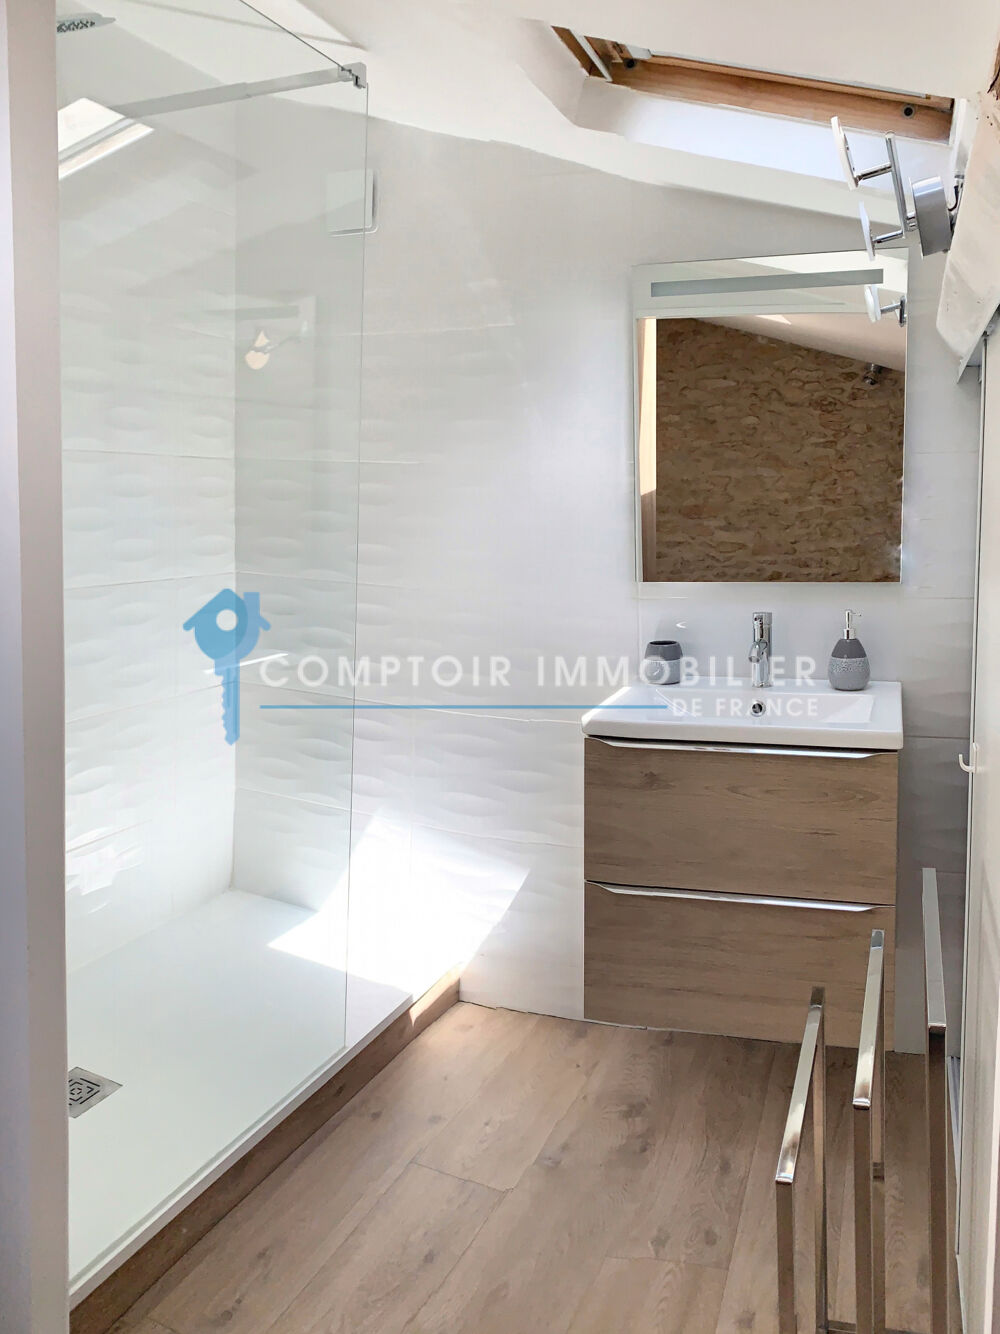 Vente Maison Dpt Gard (30) - A vendre Nimes - Maison de ville entirement rnove et meuble Nimes